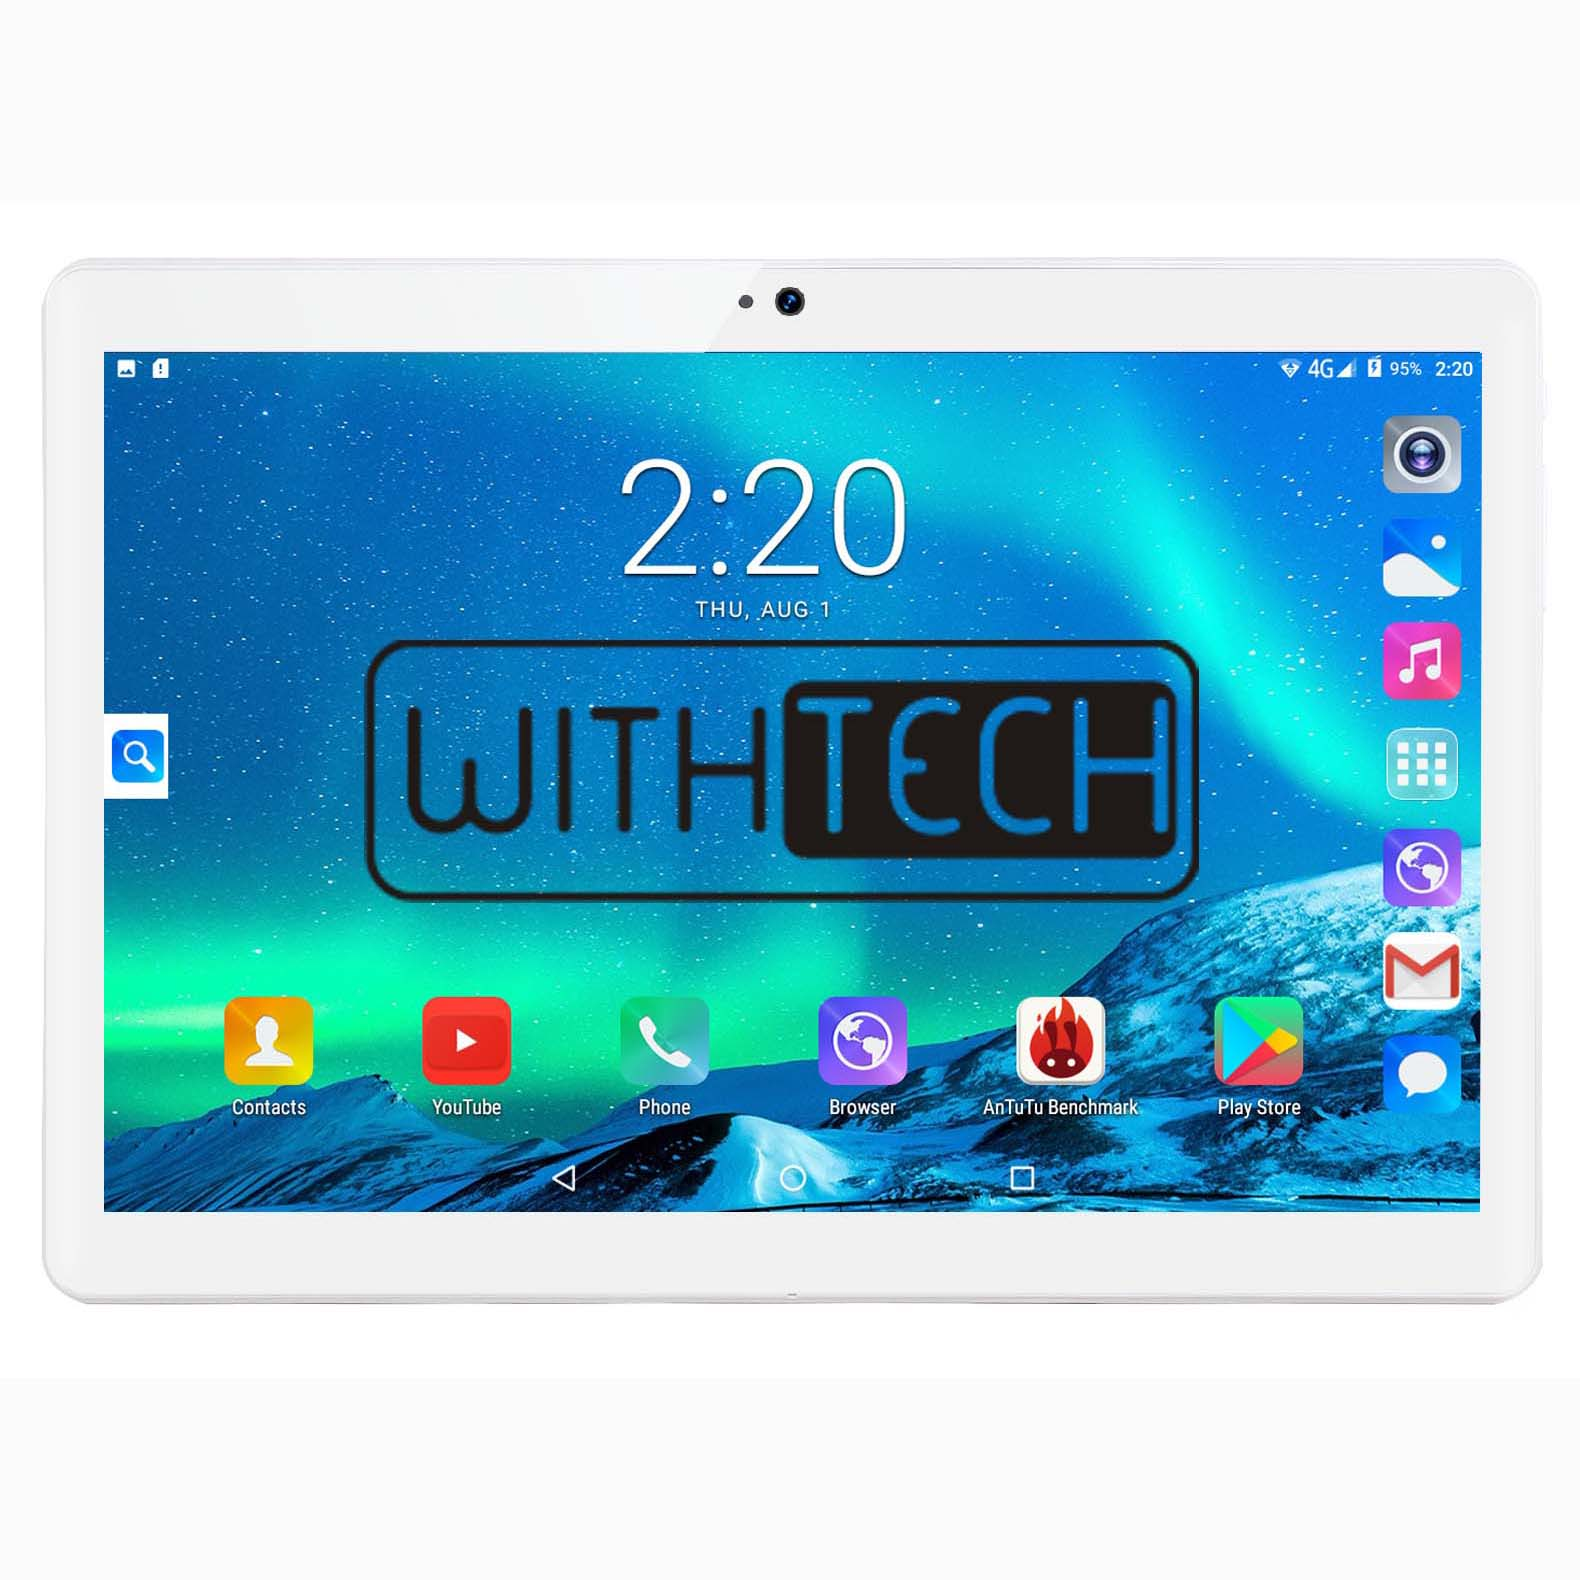 Withtech Cis Edison v 10.1 664gb 3g plata tablet 10 6gb+64gb dual sim 64 101 6